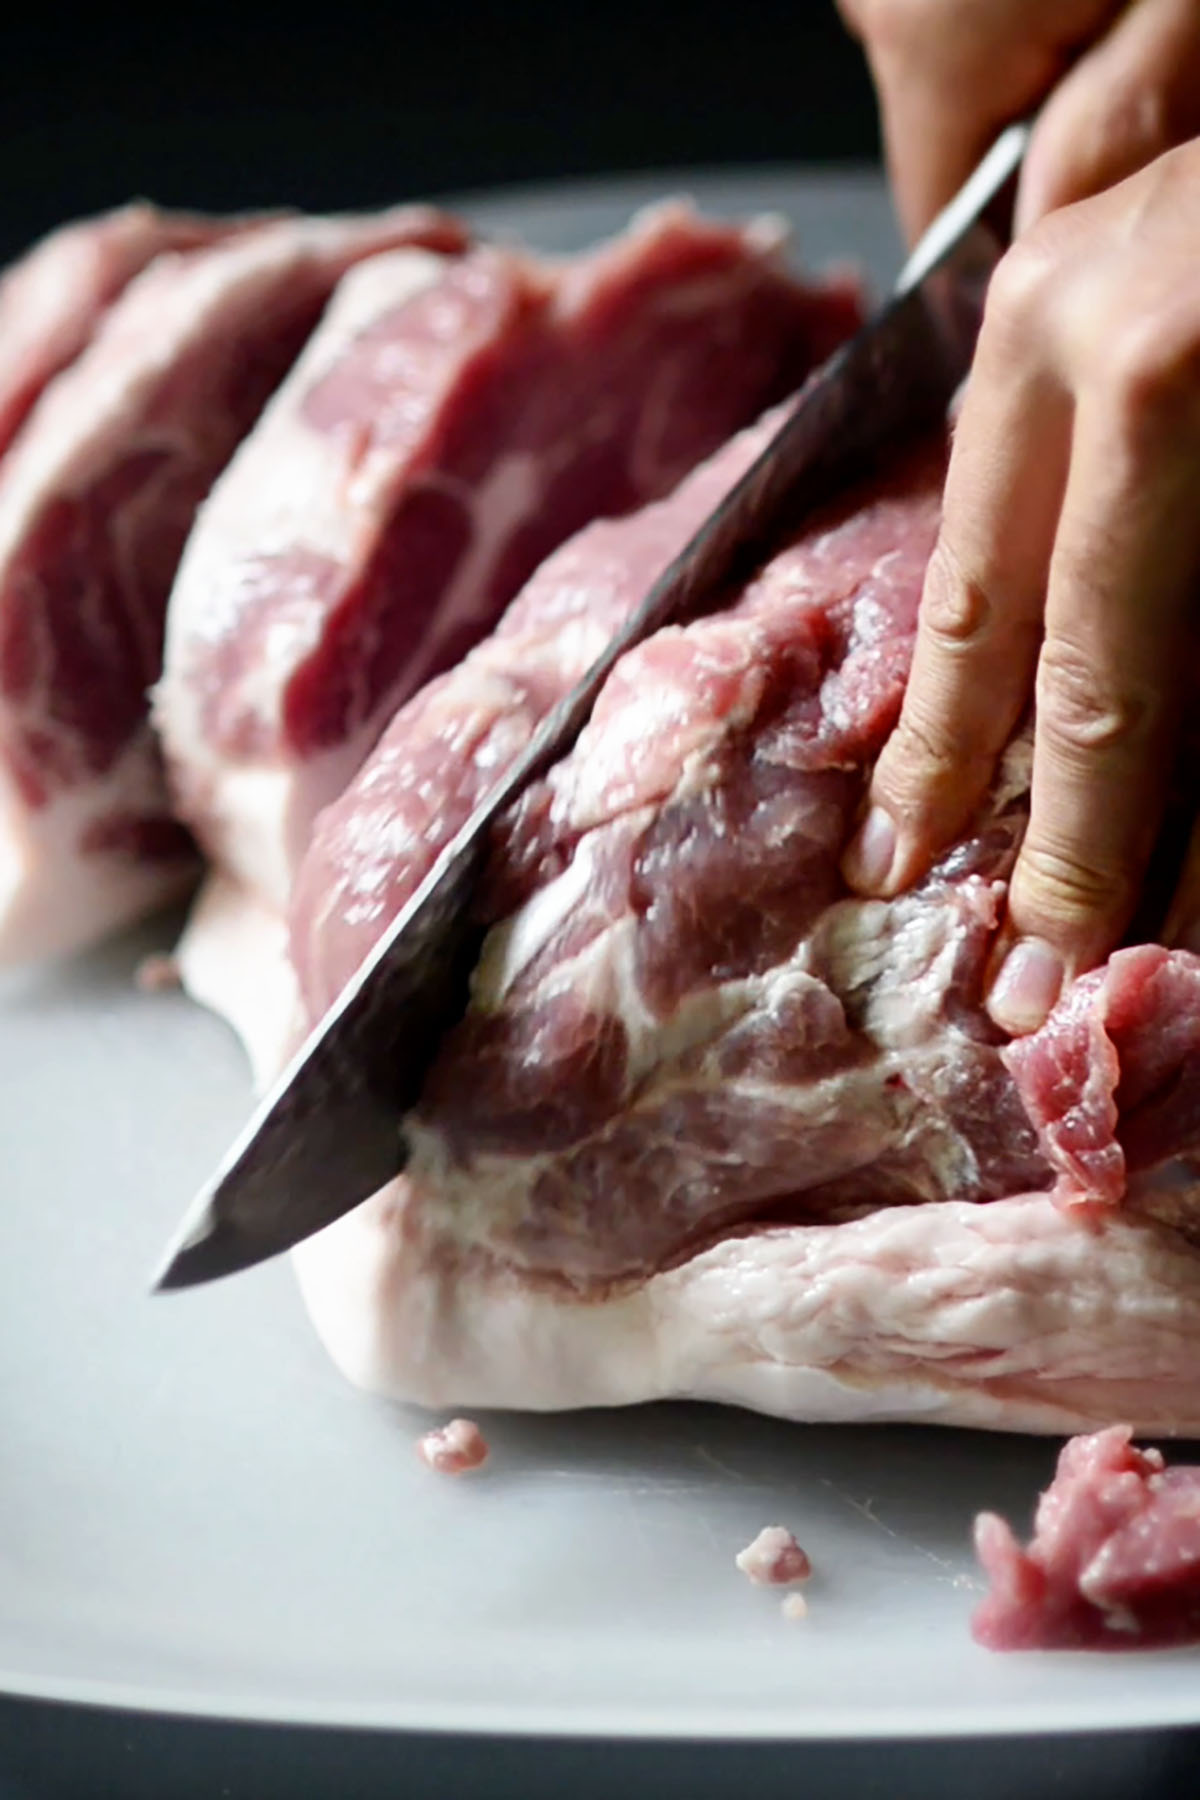 Pork shoulder being sliced into strips.